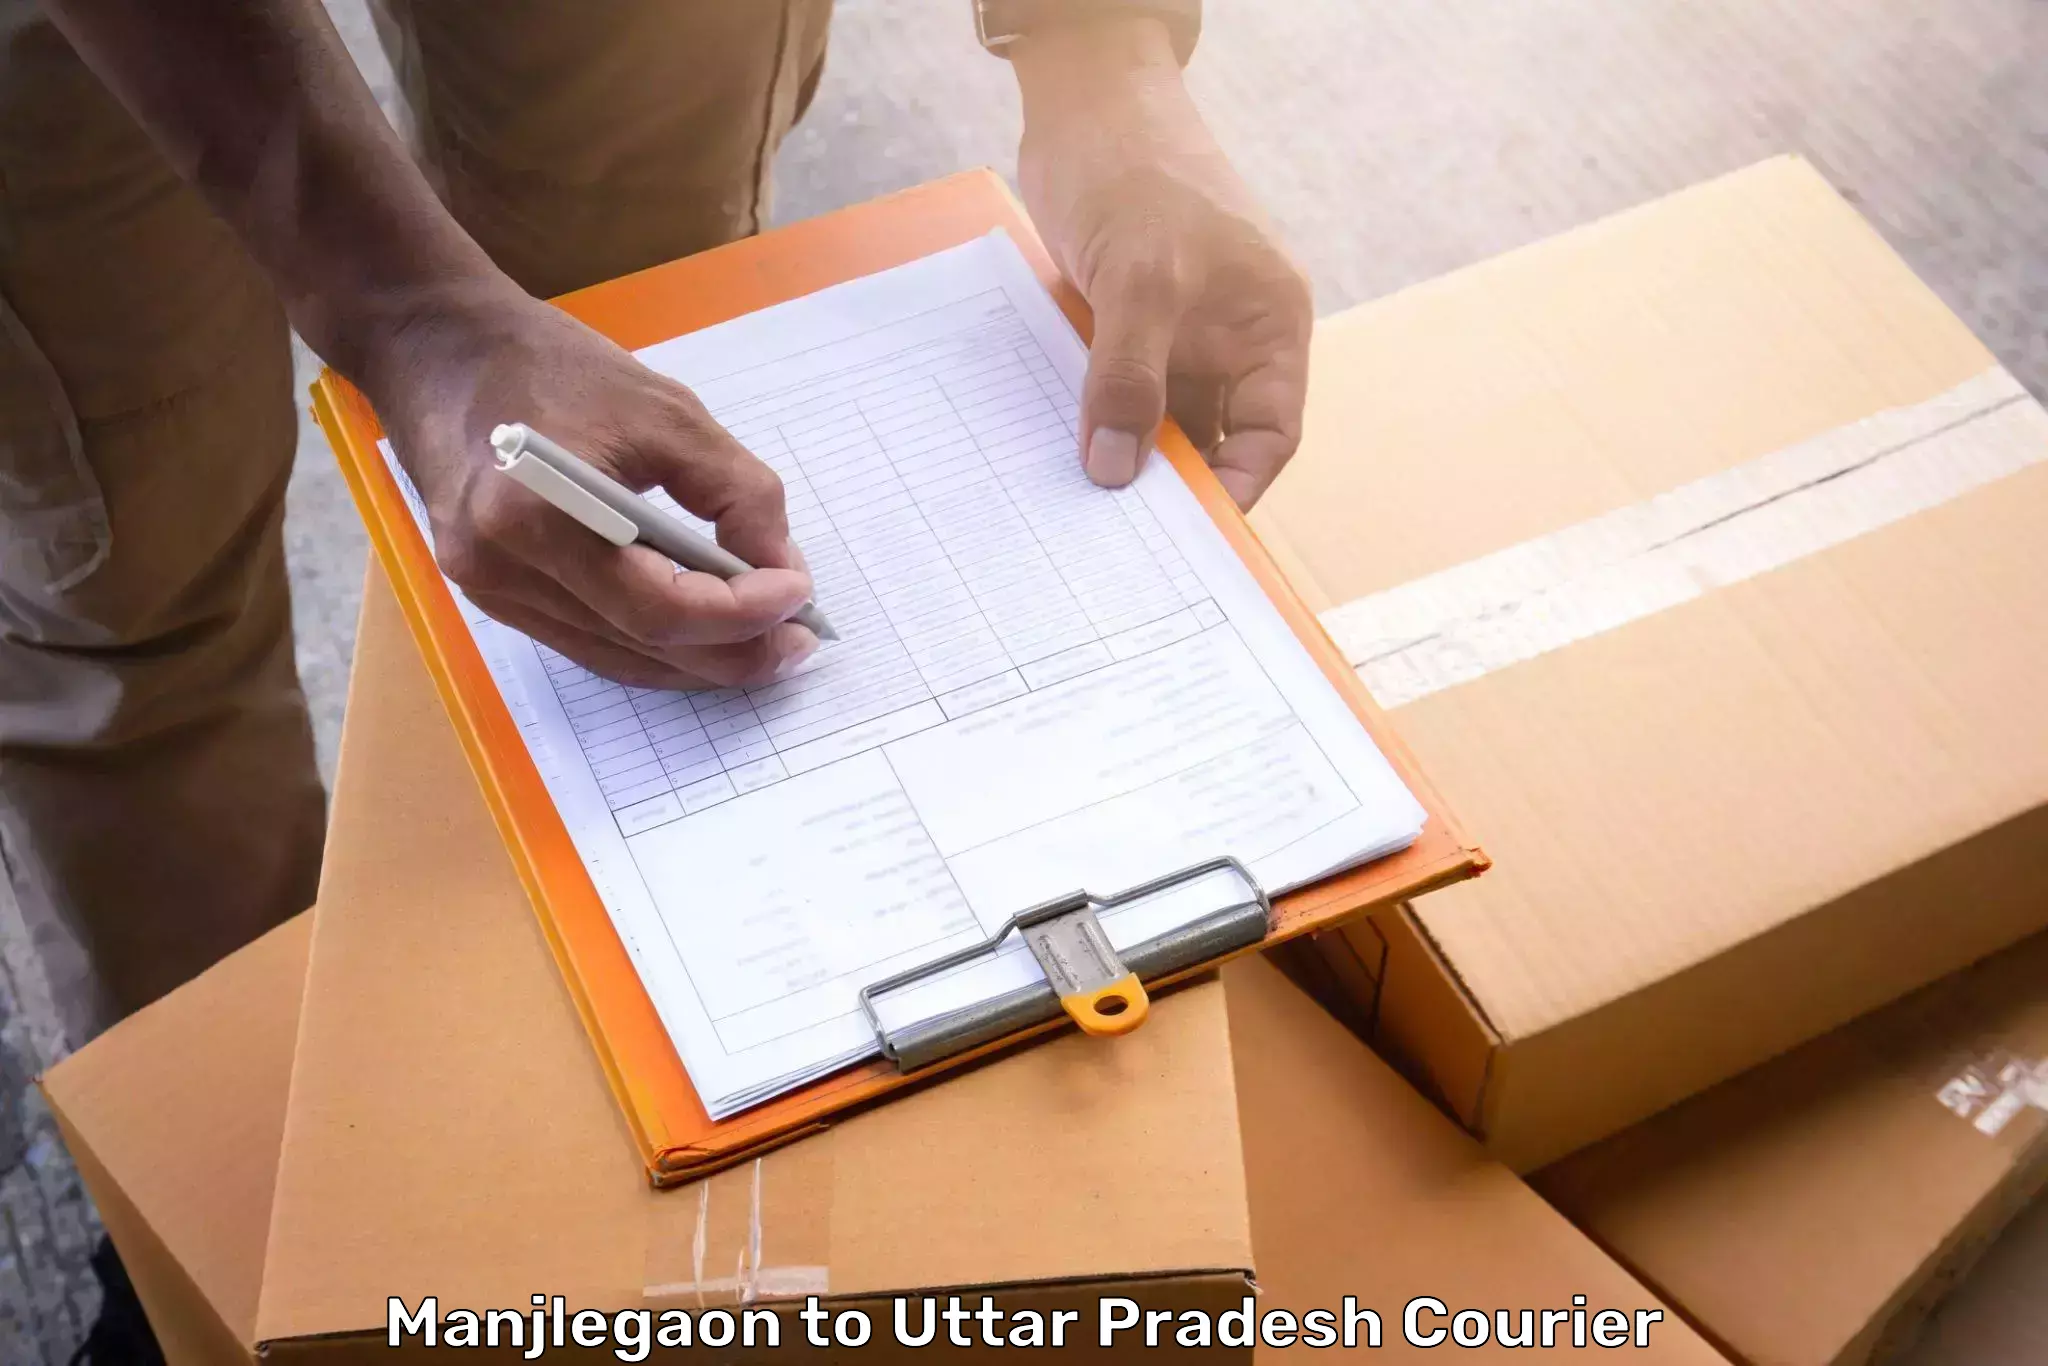 Baggage shipping schedule Manjlegaon to Agra